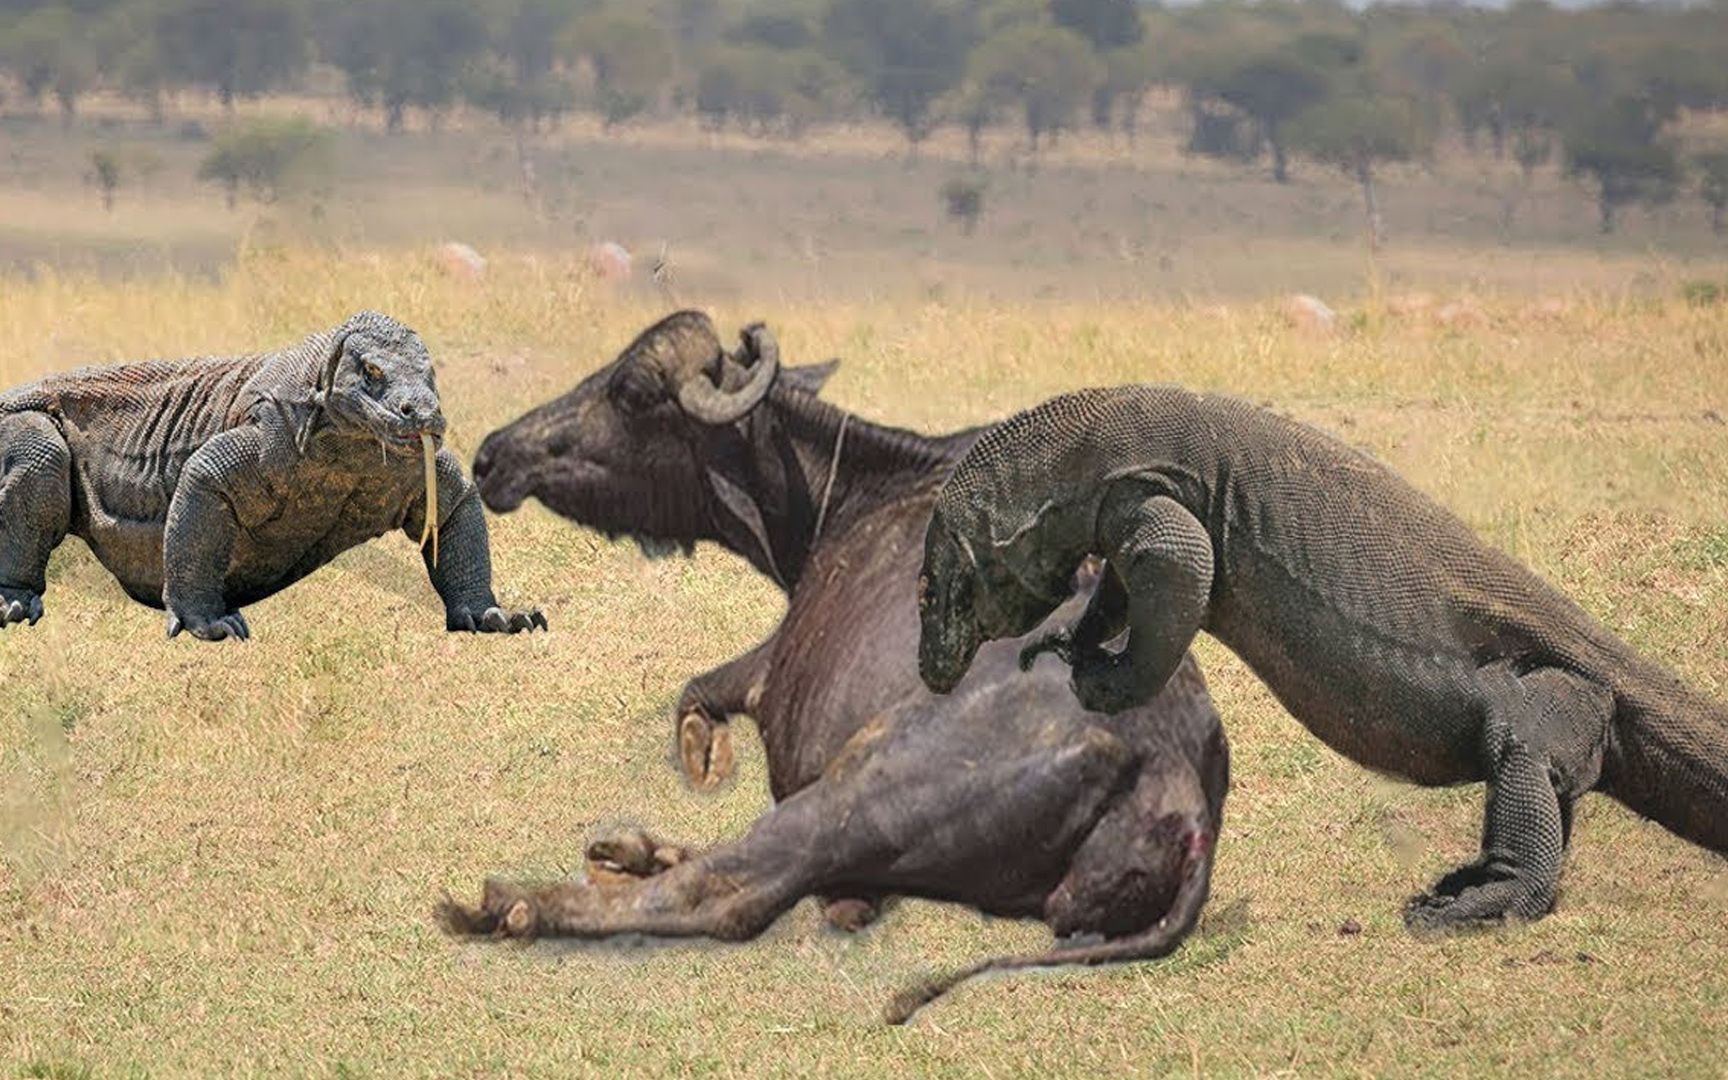 科莫多巨蜥捕杀水牛全过程一击致命镜头记录精彩瞬间